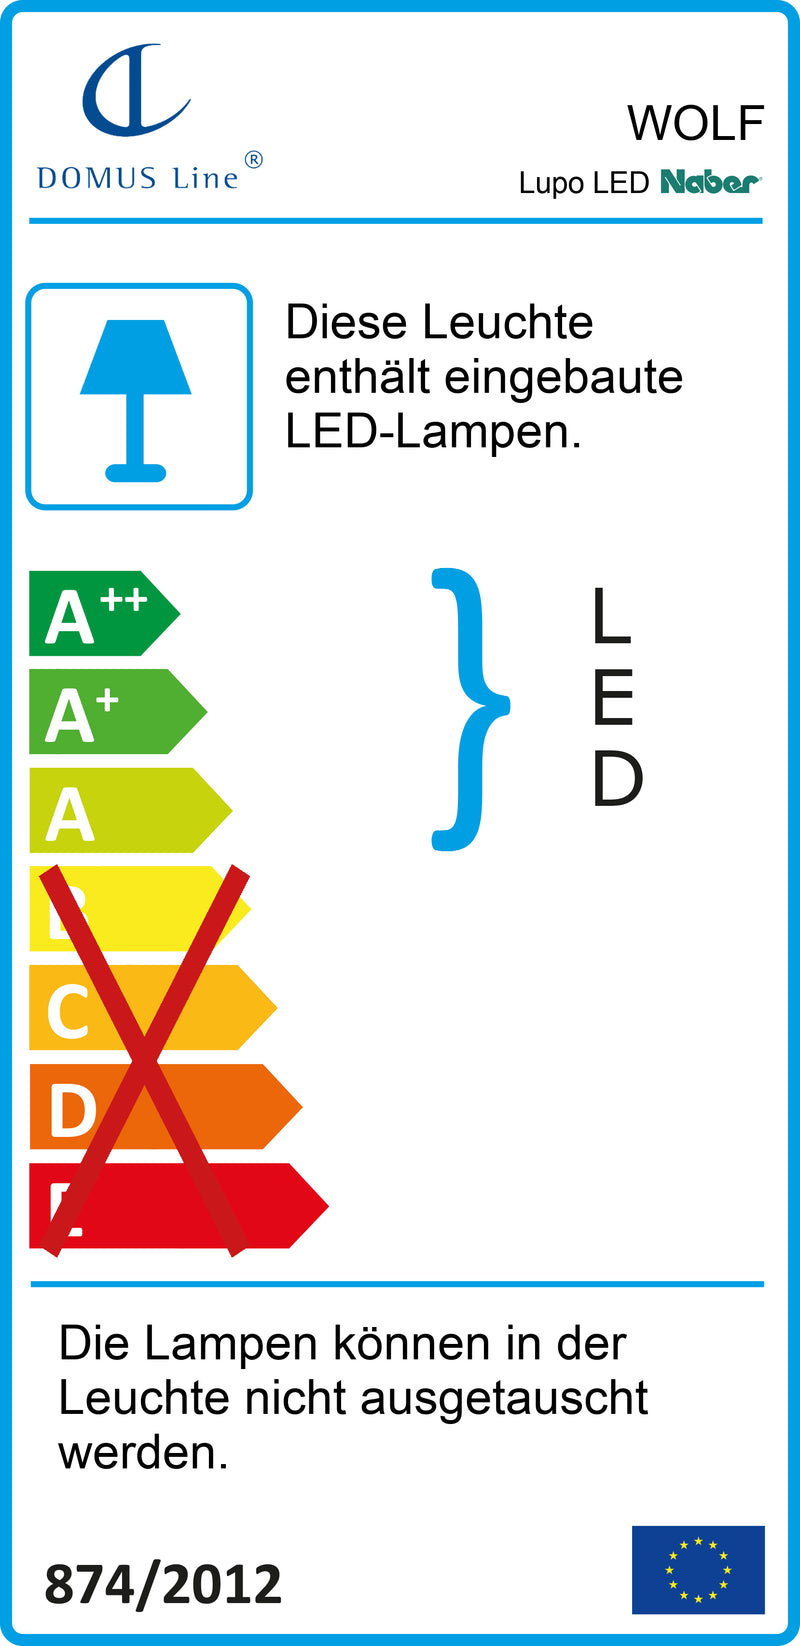 E-Label zu Zeichnung zu Lupo LED als Variante L 1200 mm, 18 W, schwarz matt von Naber GmbH in der Kategorie Lichttechnik in Österreich auf conceptshop.at